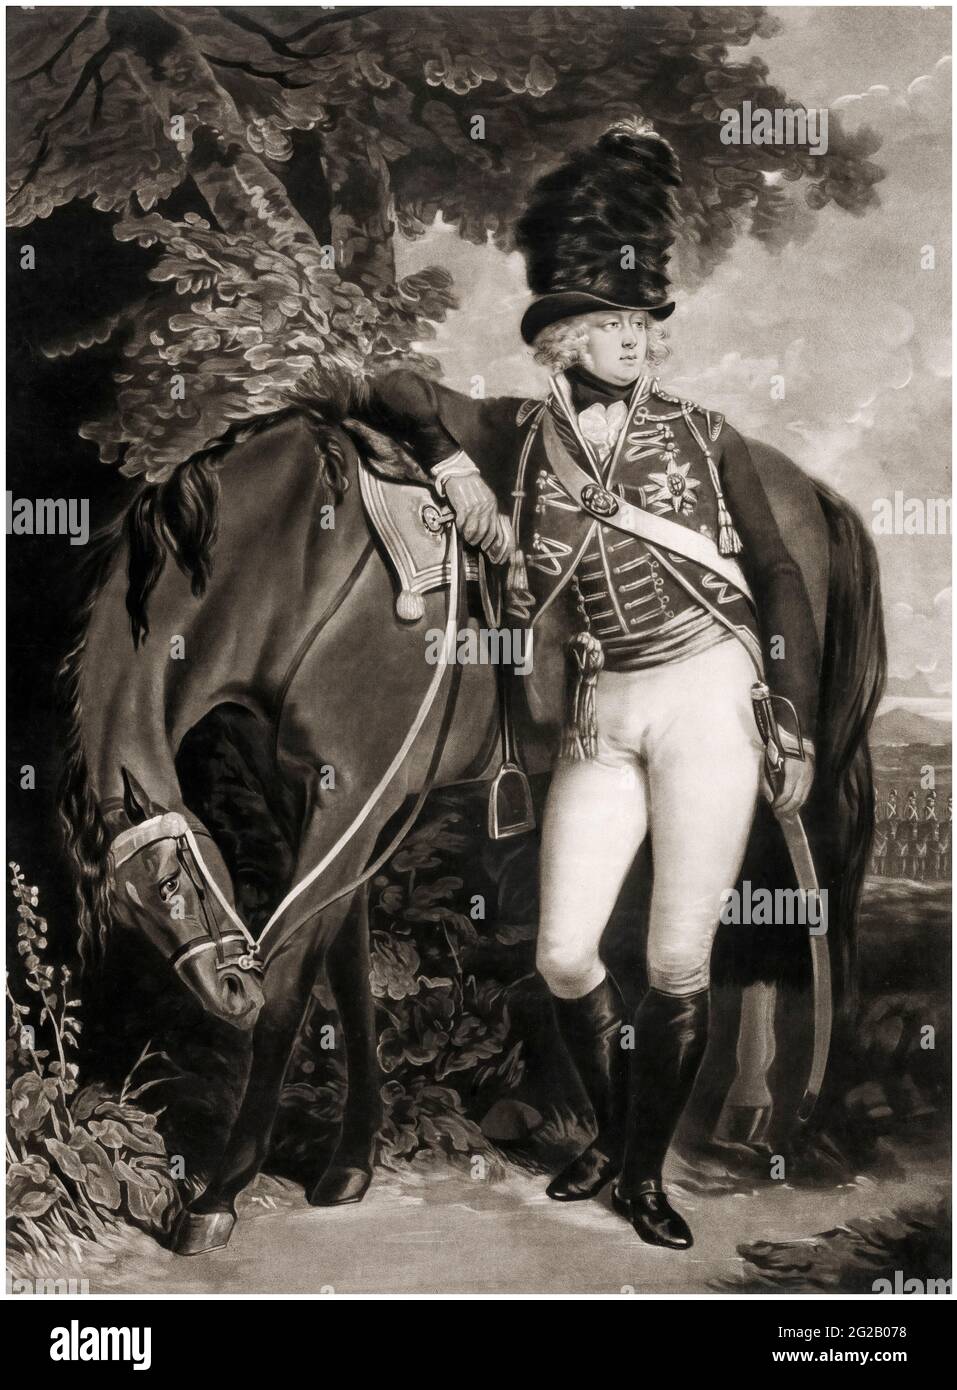 Giorgio (1762–1830) Principe del Galles, in seguito Giorgio IV Re del Regno Unito di Gran Bretagna e Irlanda e Re di Hannover (1820-1830), incisione ritratto e mezzotinta di John Raphael Smith, 1792 Foto Stock